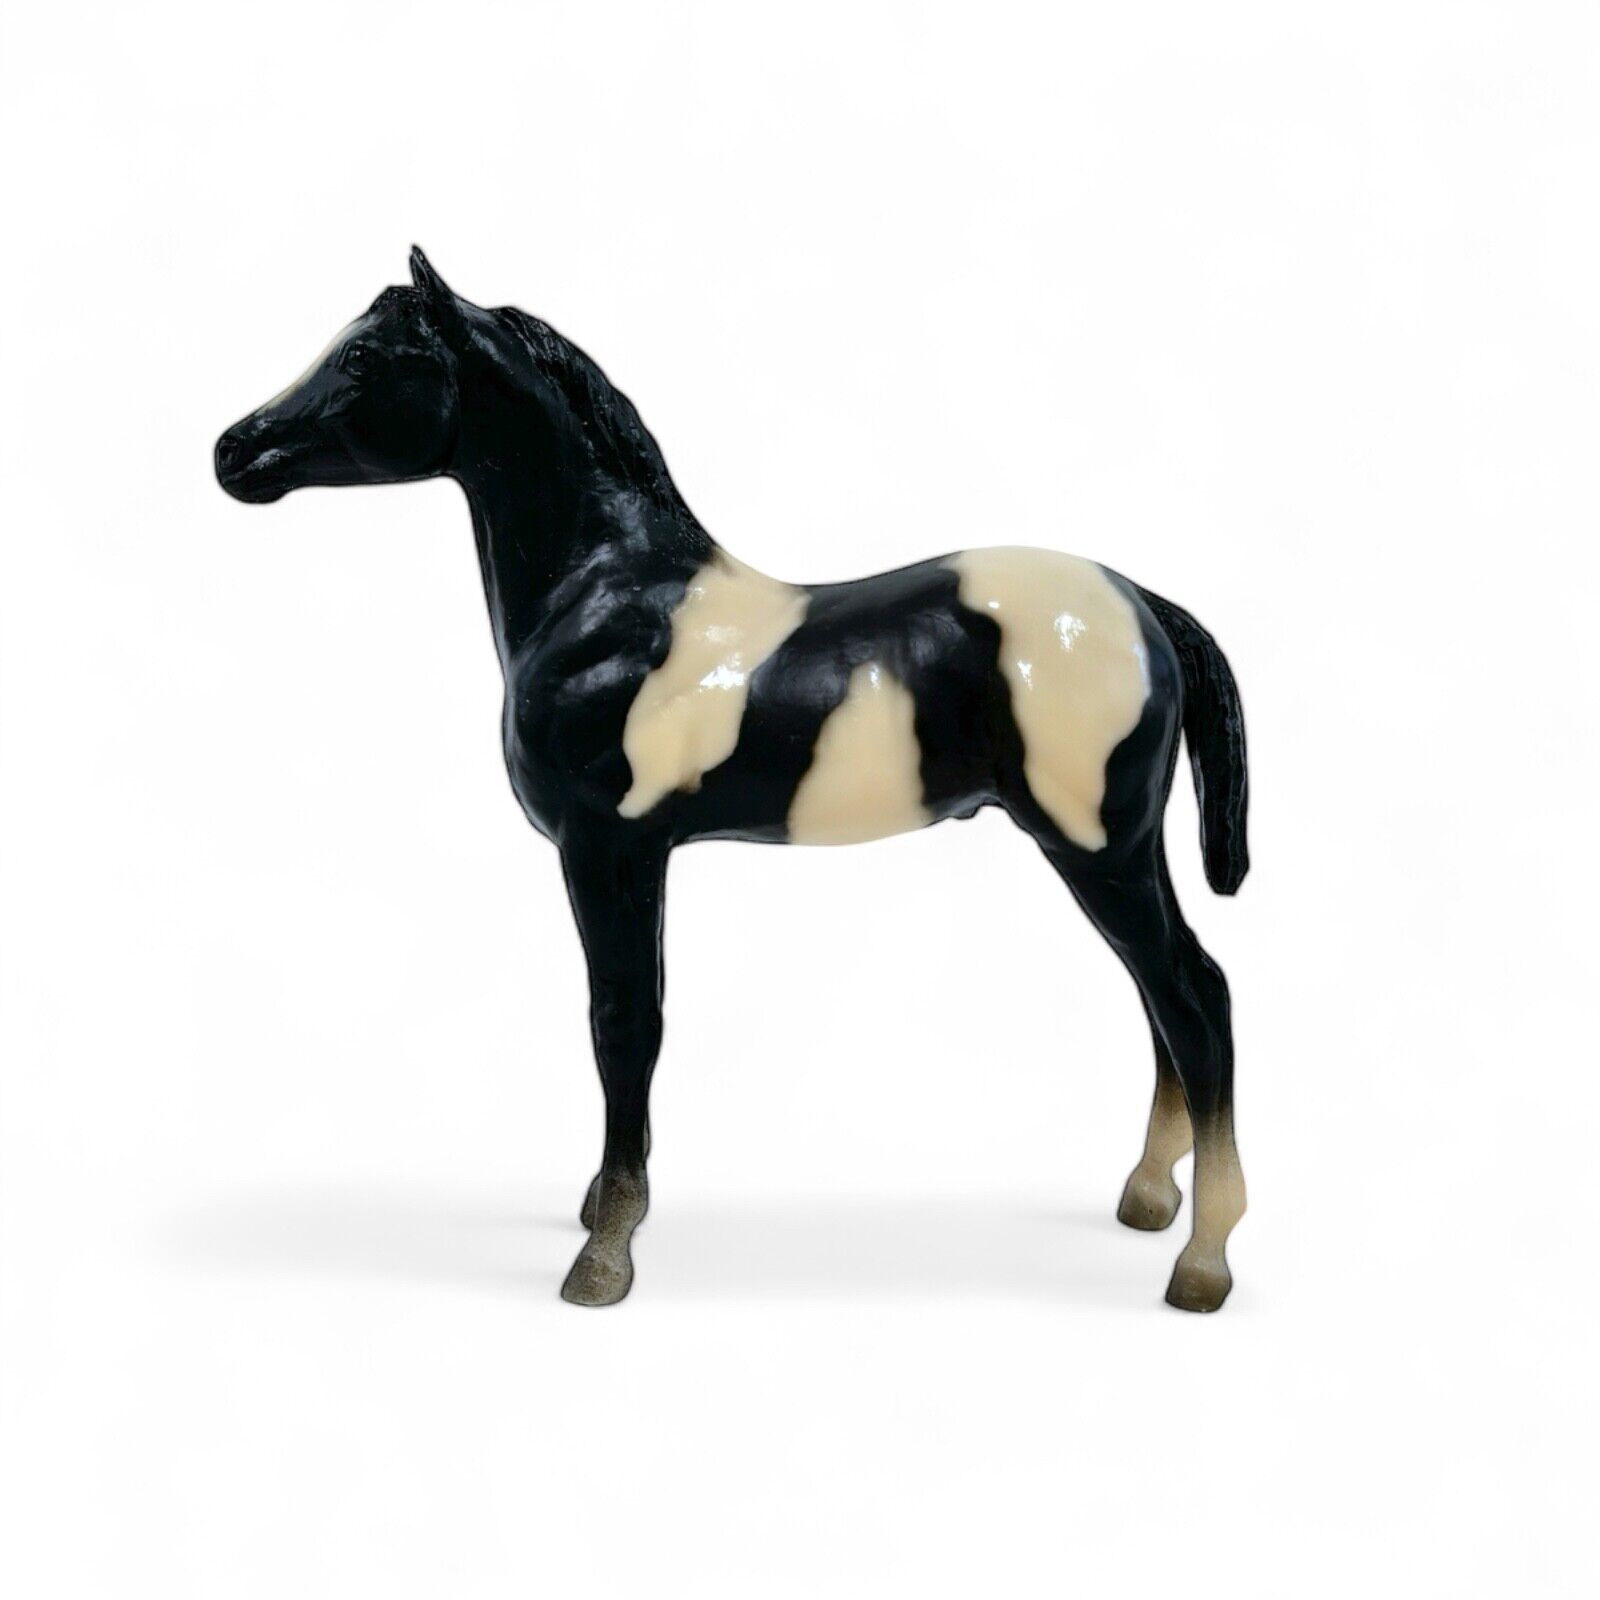 VTG Breyer Overo Paint Stock Horse Foal No. 231 7” Black White